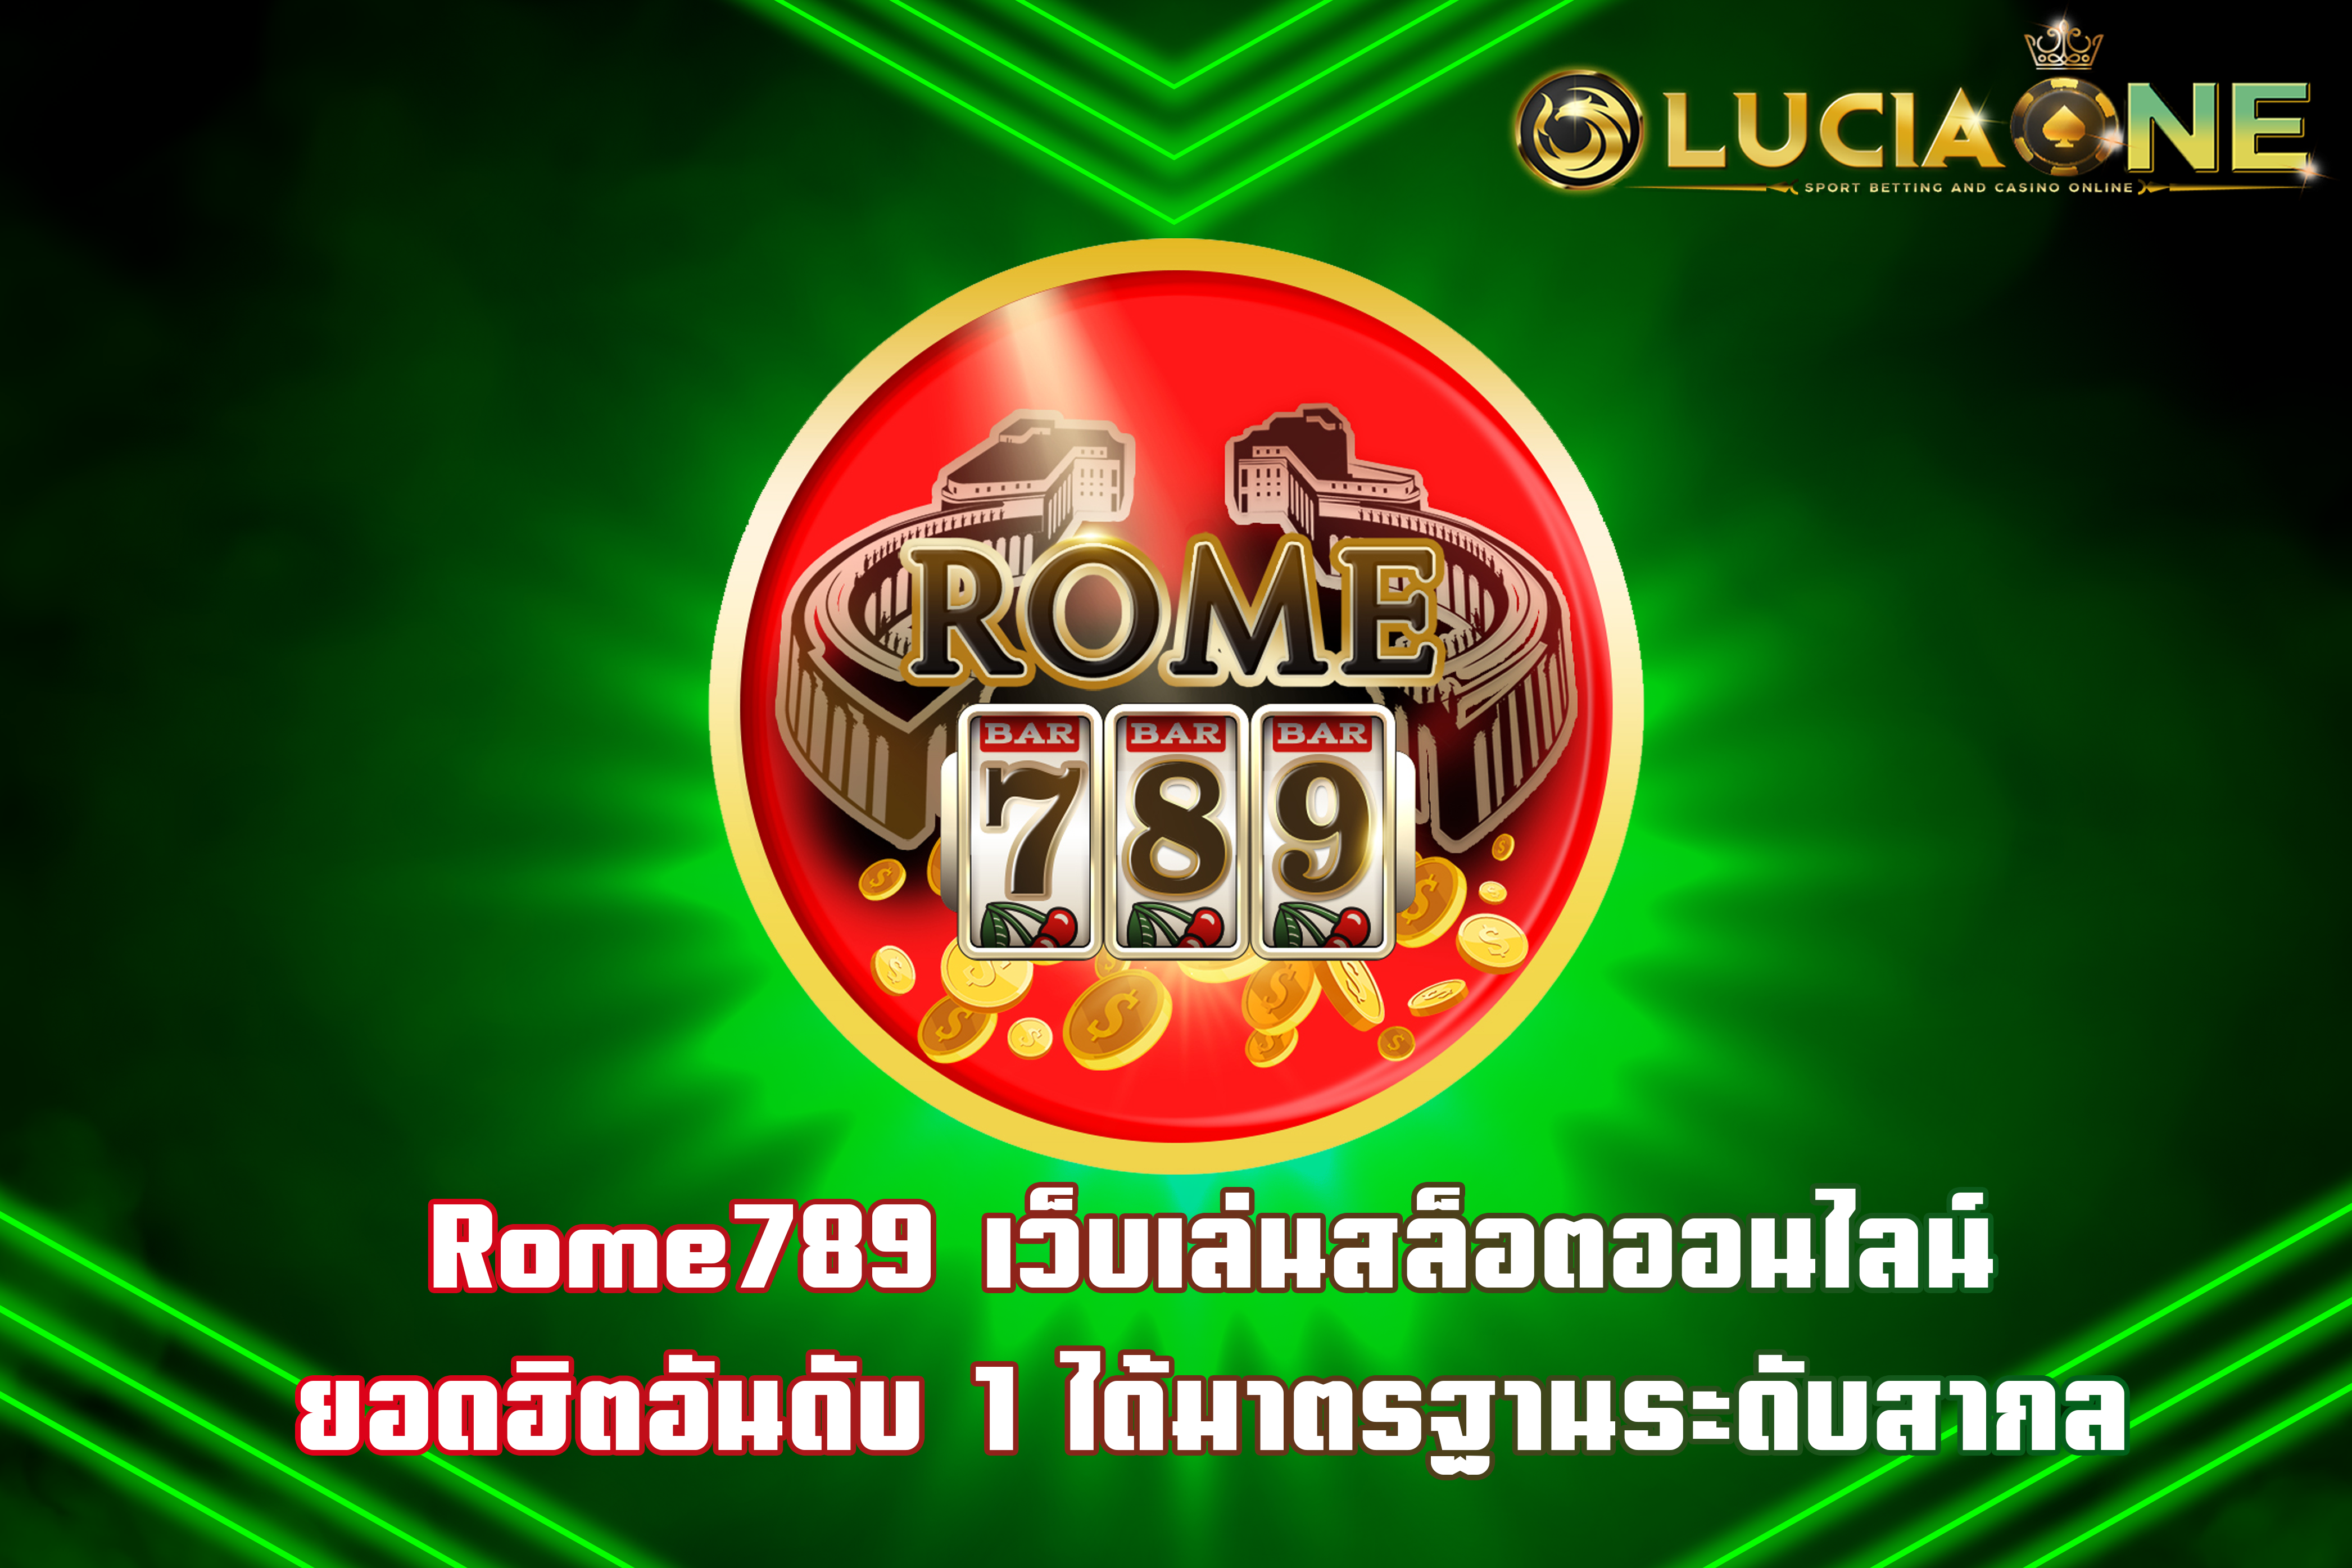 Rome789 เว็บเล่นสล็อตออนไลน์ ยอดฮิตอันดับ1 ได้มาตรฐานระดับสากล